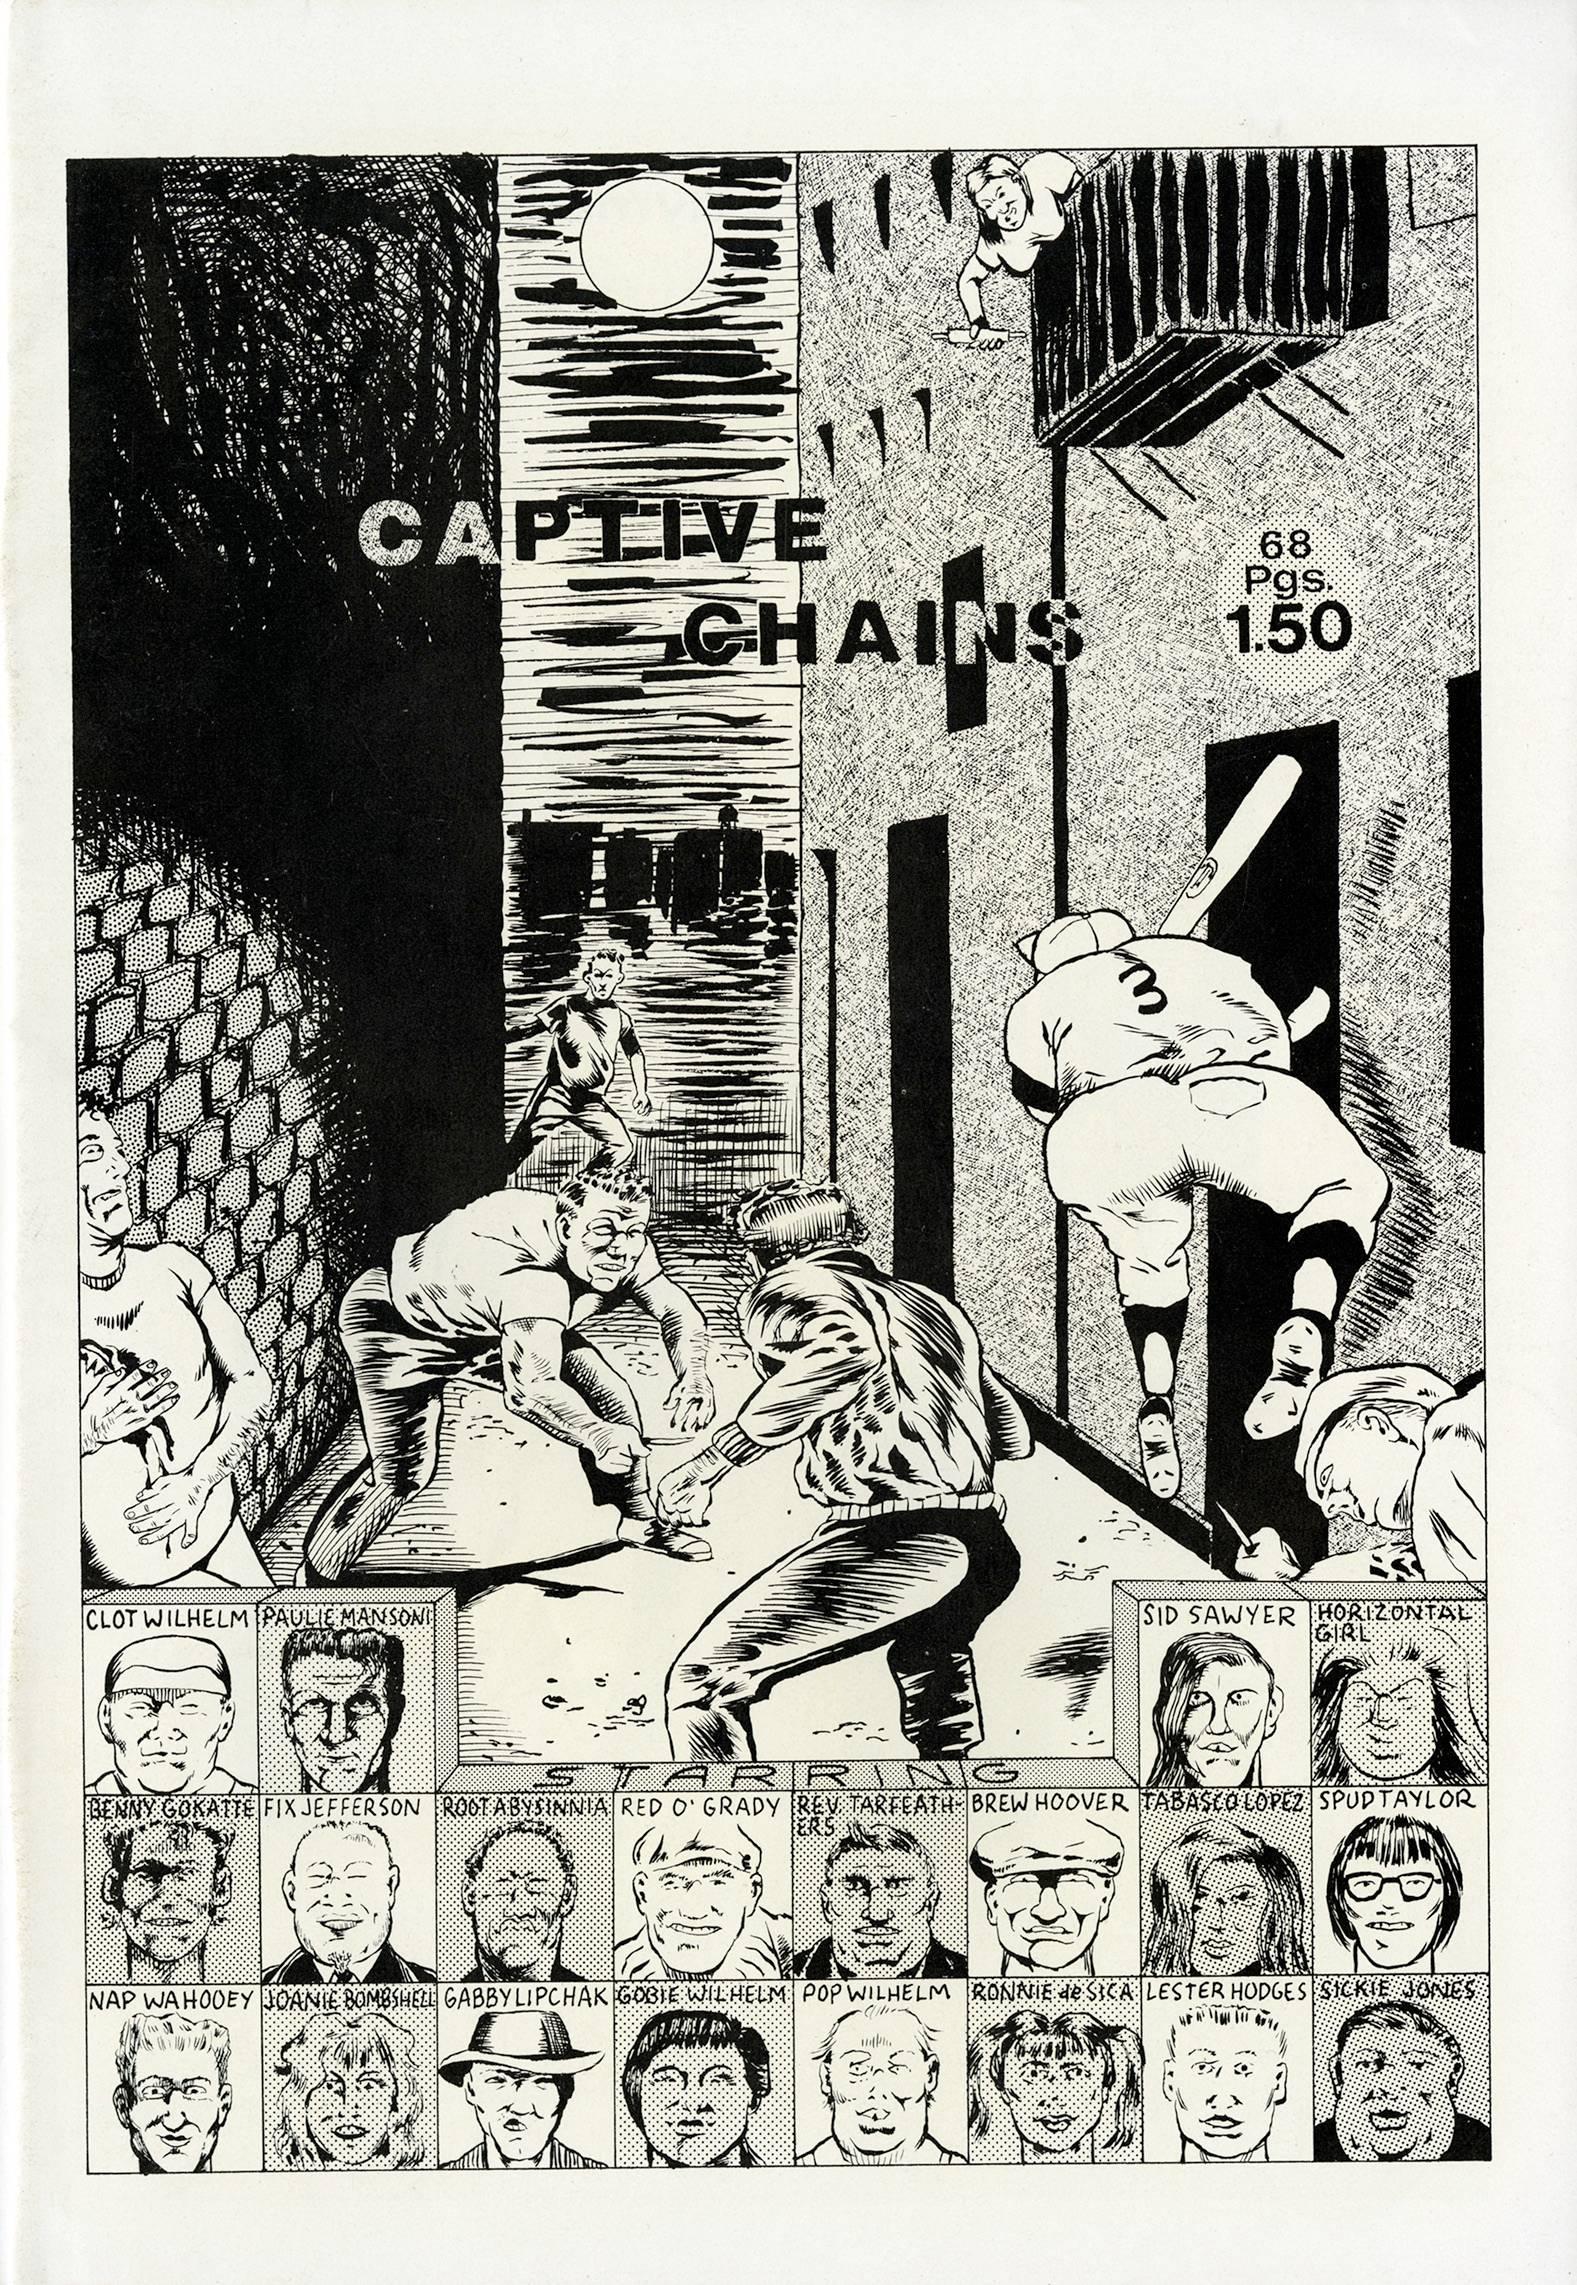 Raymond Pettibon Captive Chains, 1978:
Recentemente esposto nella sua interezza al New Museum di New York, il primo libro d'artista di Pettibon, ben documentato, è ampiamente considerato come un'opera fondamentale per lo sviluppo dello stile e dei